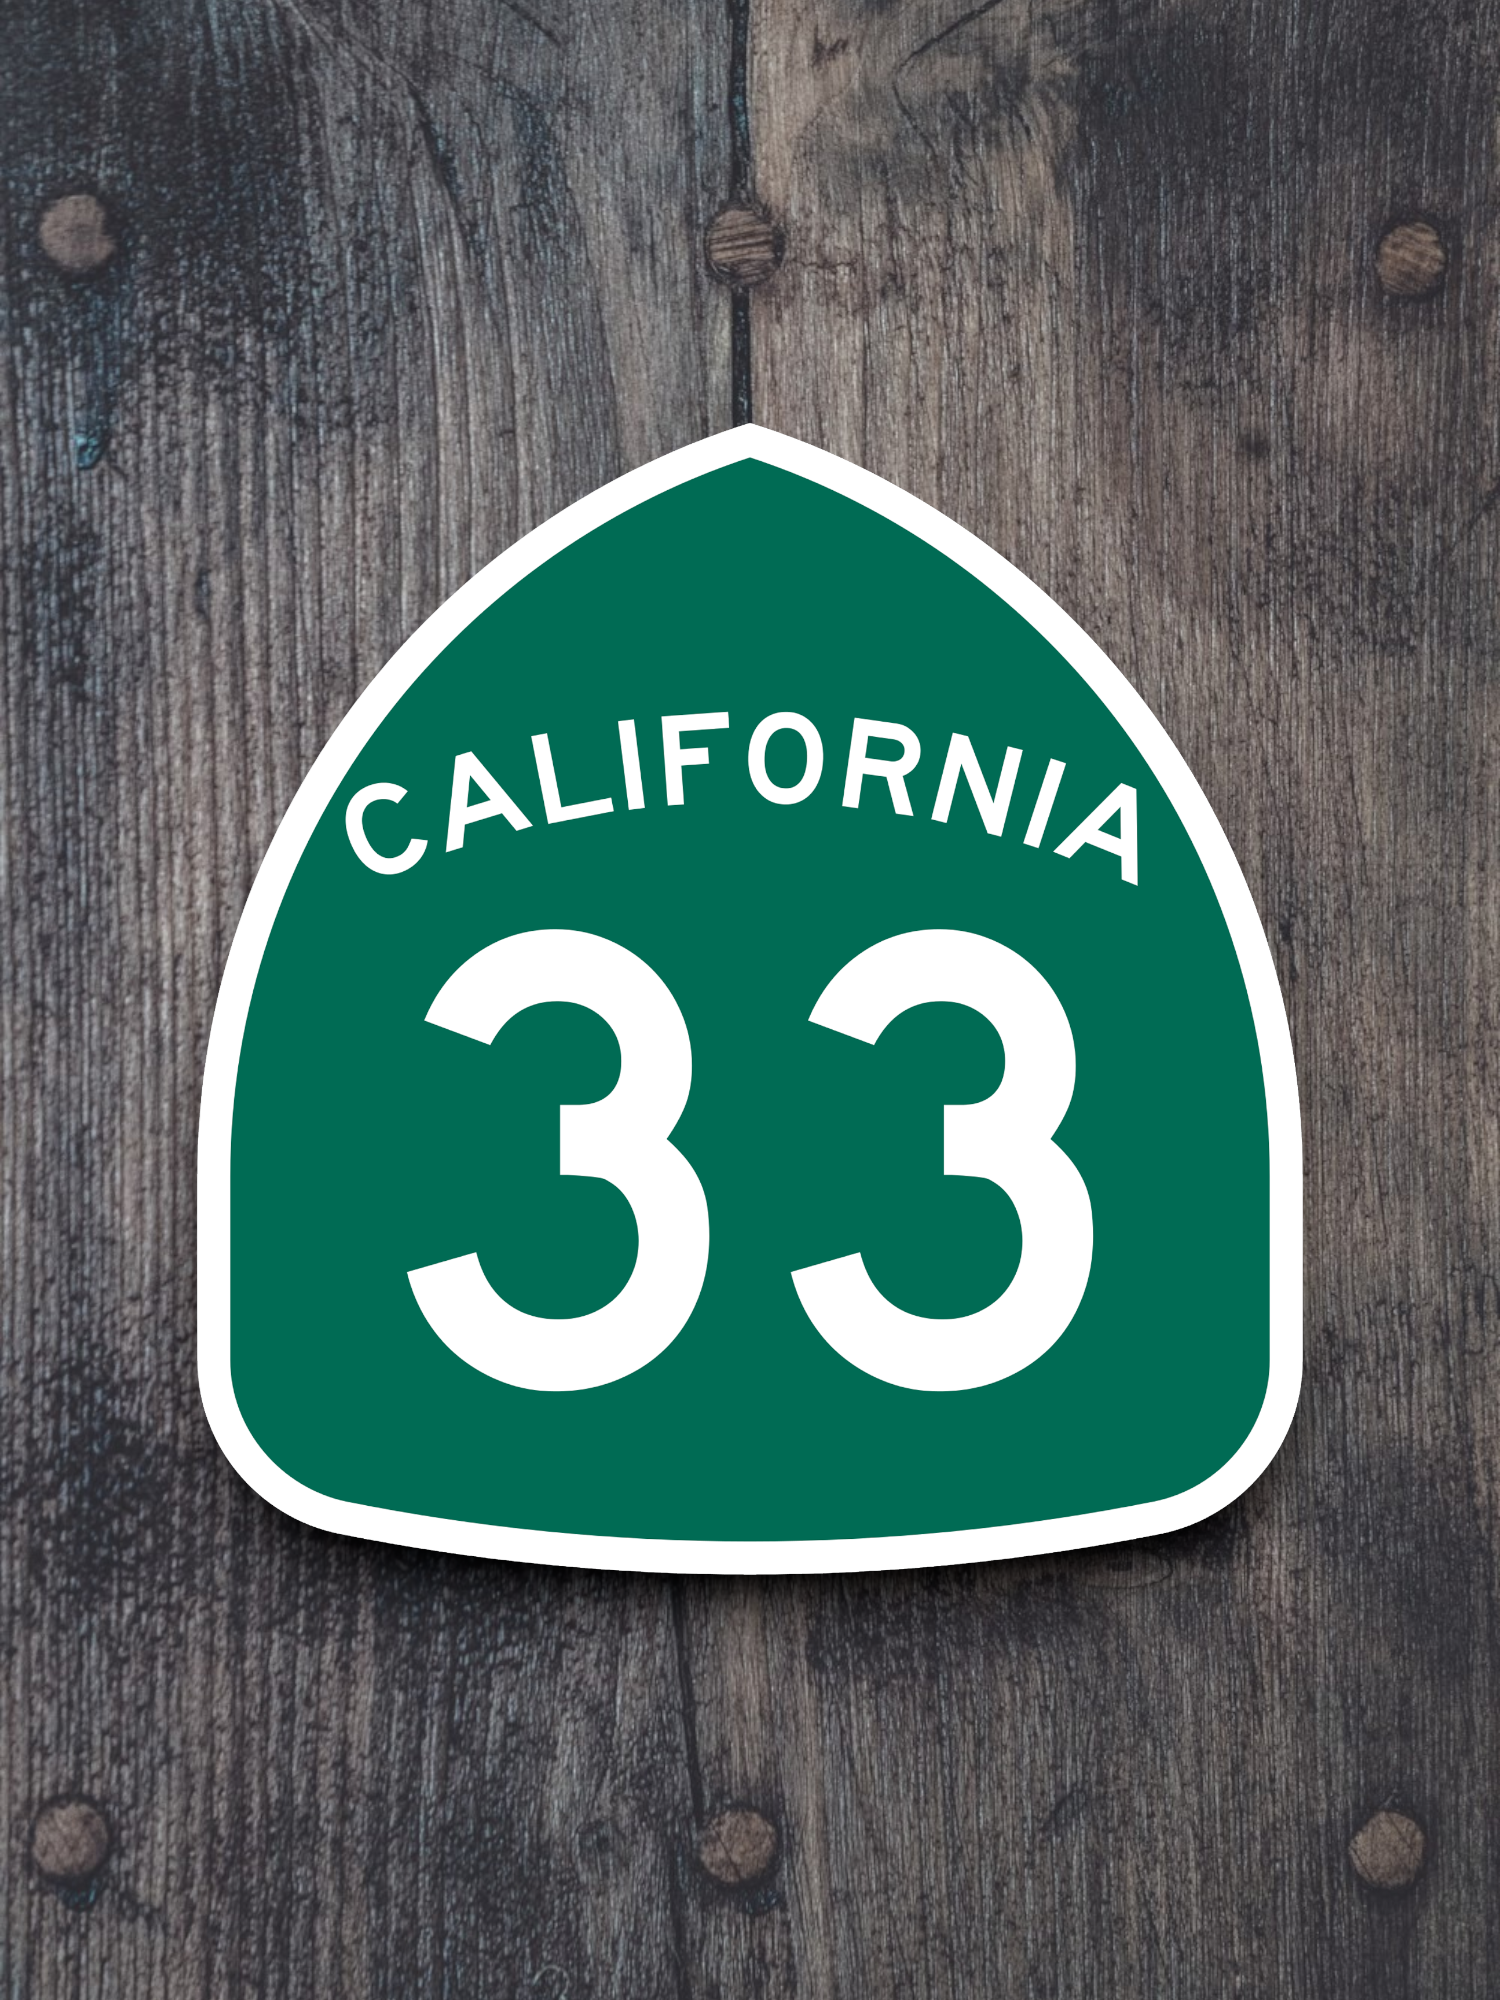 California State Route 33 Sticker